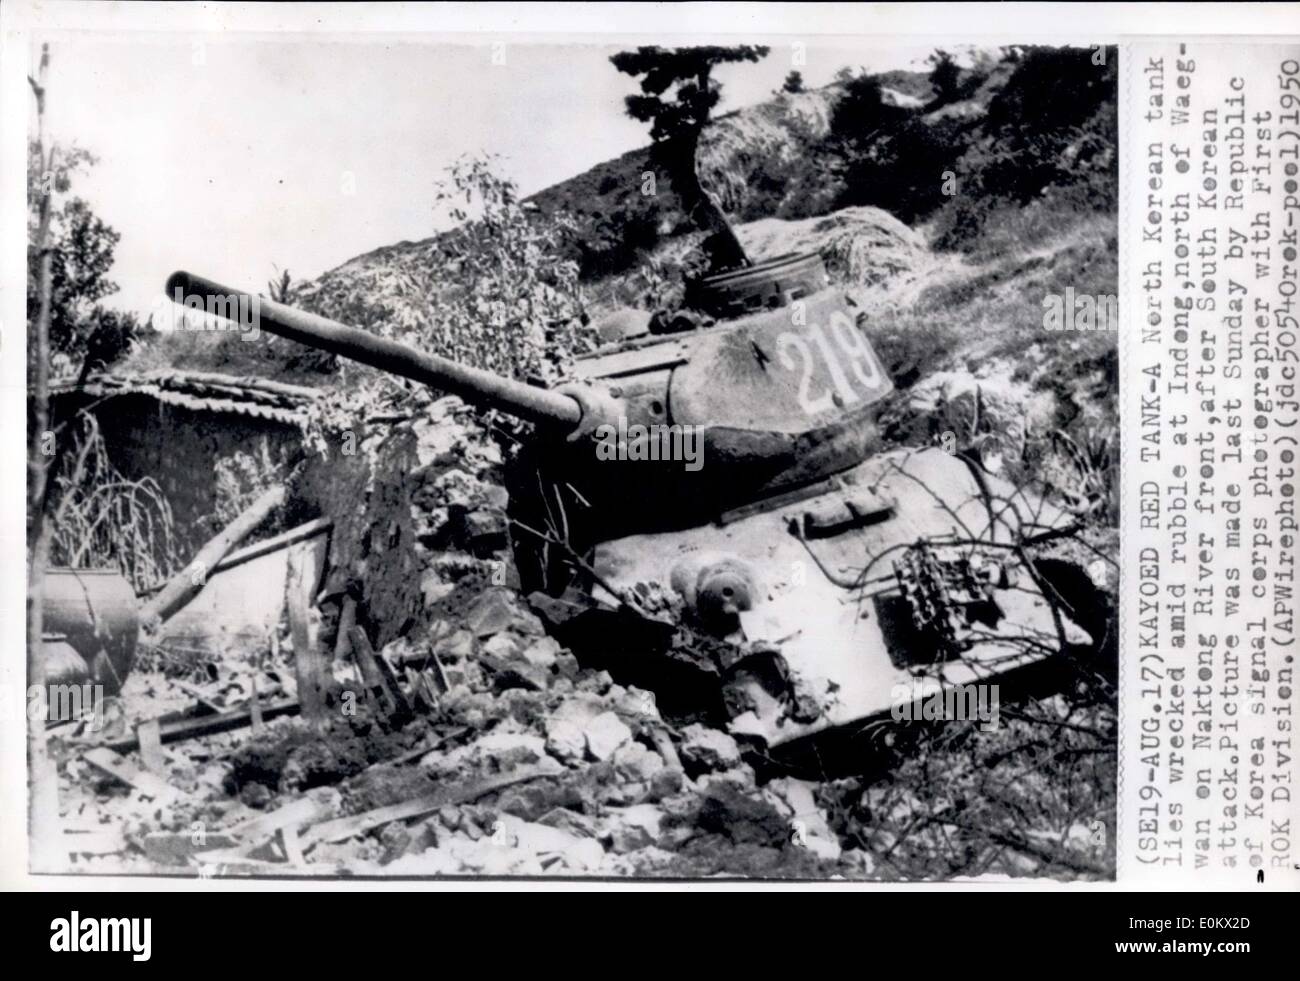 17. August 1950 liegt - Kayoed roten Tank - A nordkoreanischen Tank zerstörten inmitten von Schutt am Indong, nördlich von Waegwan En Nakten Flussufer, nach Südkorea Angriff. Bild war letzten Sonntag in Republik Korea Signal Corps Fotograf mit Rok Erstligisten gemacht. Stockfoto